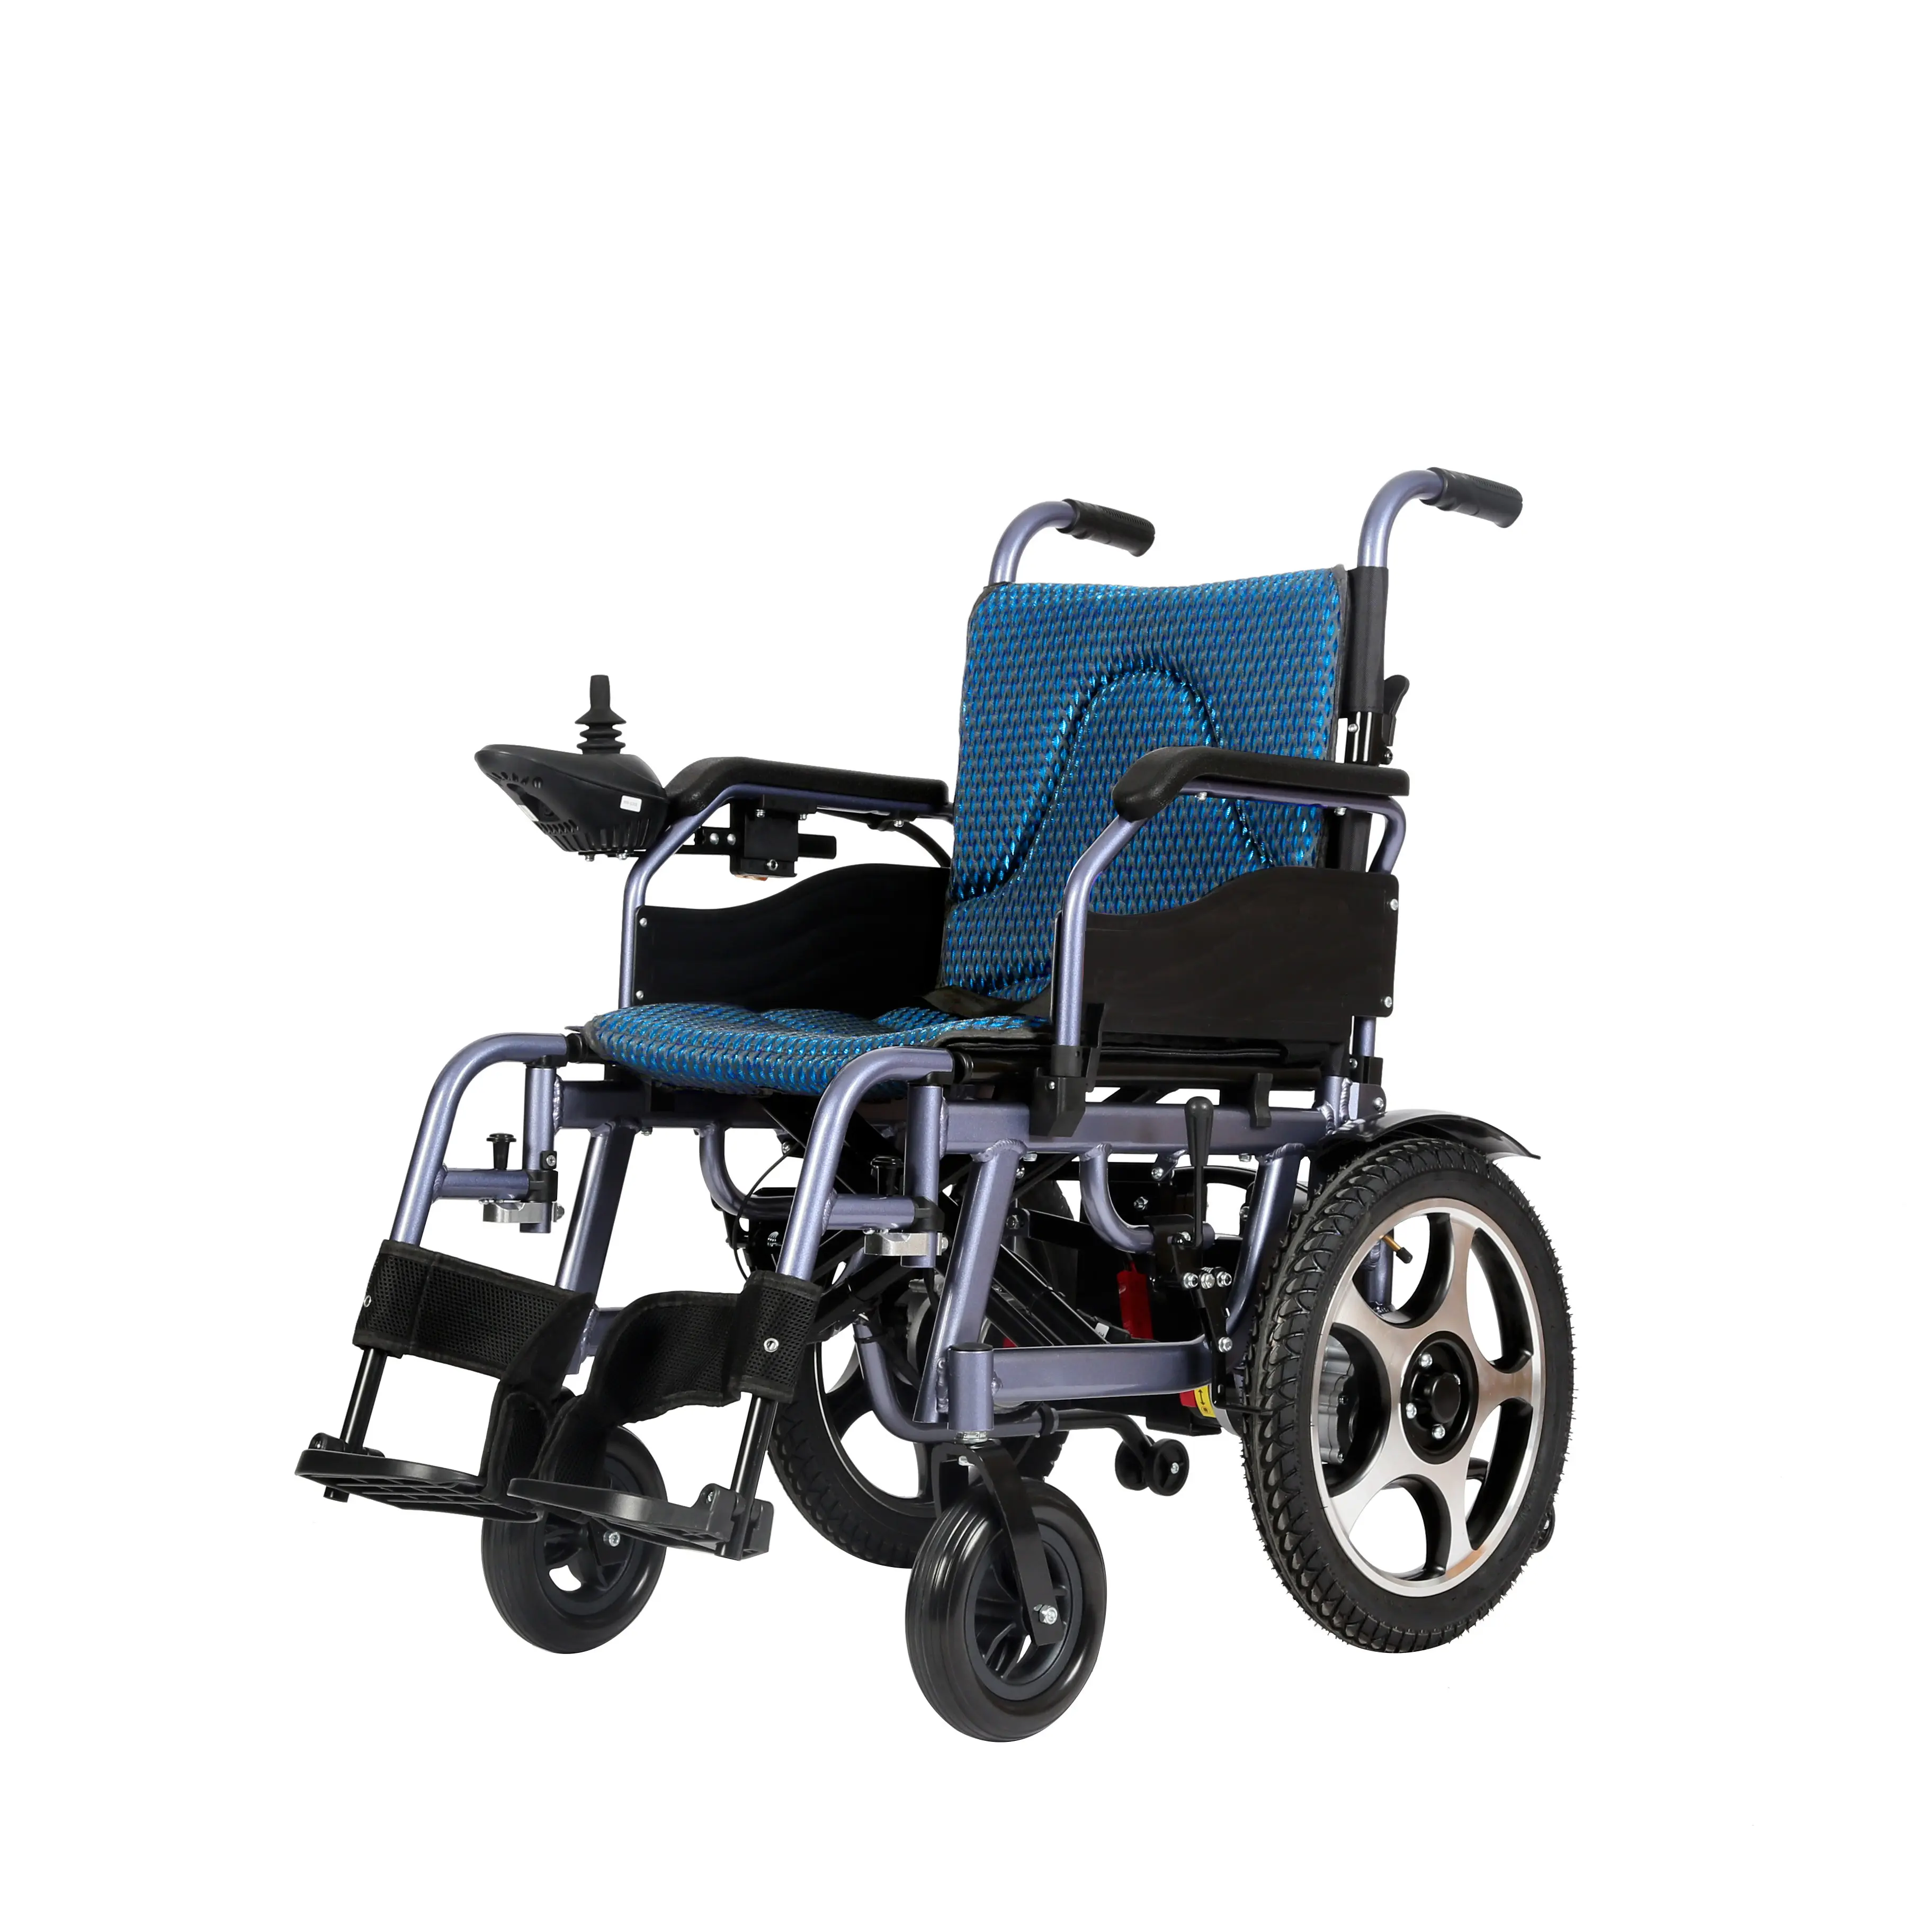 Yeni tasarım ucuz fiyat katlanır Motor gücü elektrikli tekerlekli sandalye engelliler için